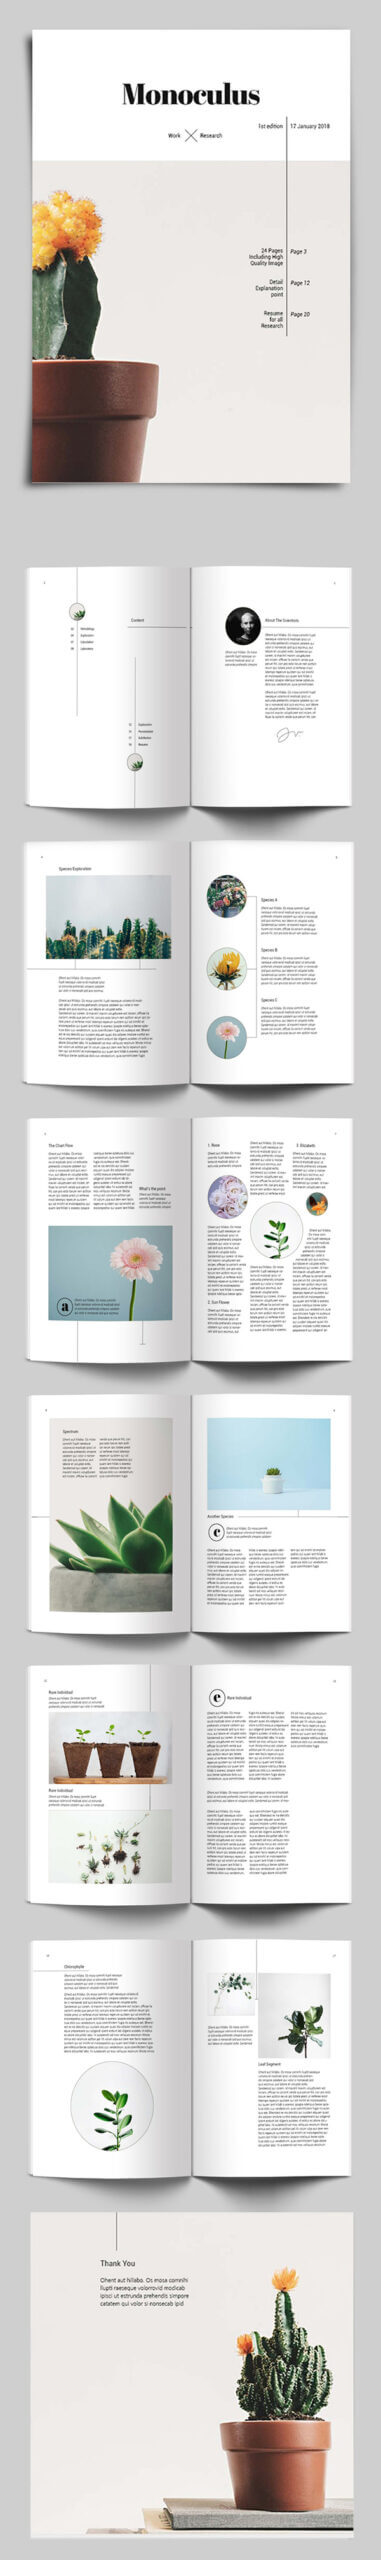 100 Professional Corporate Brochure Templates | Design Regarding 12 Page Brochure Template